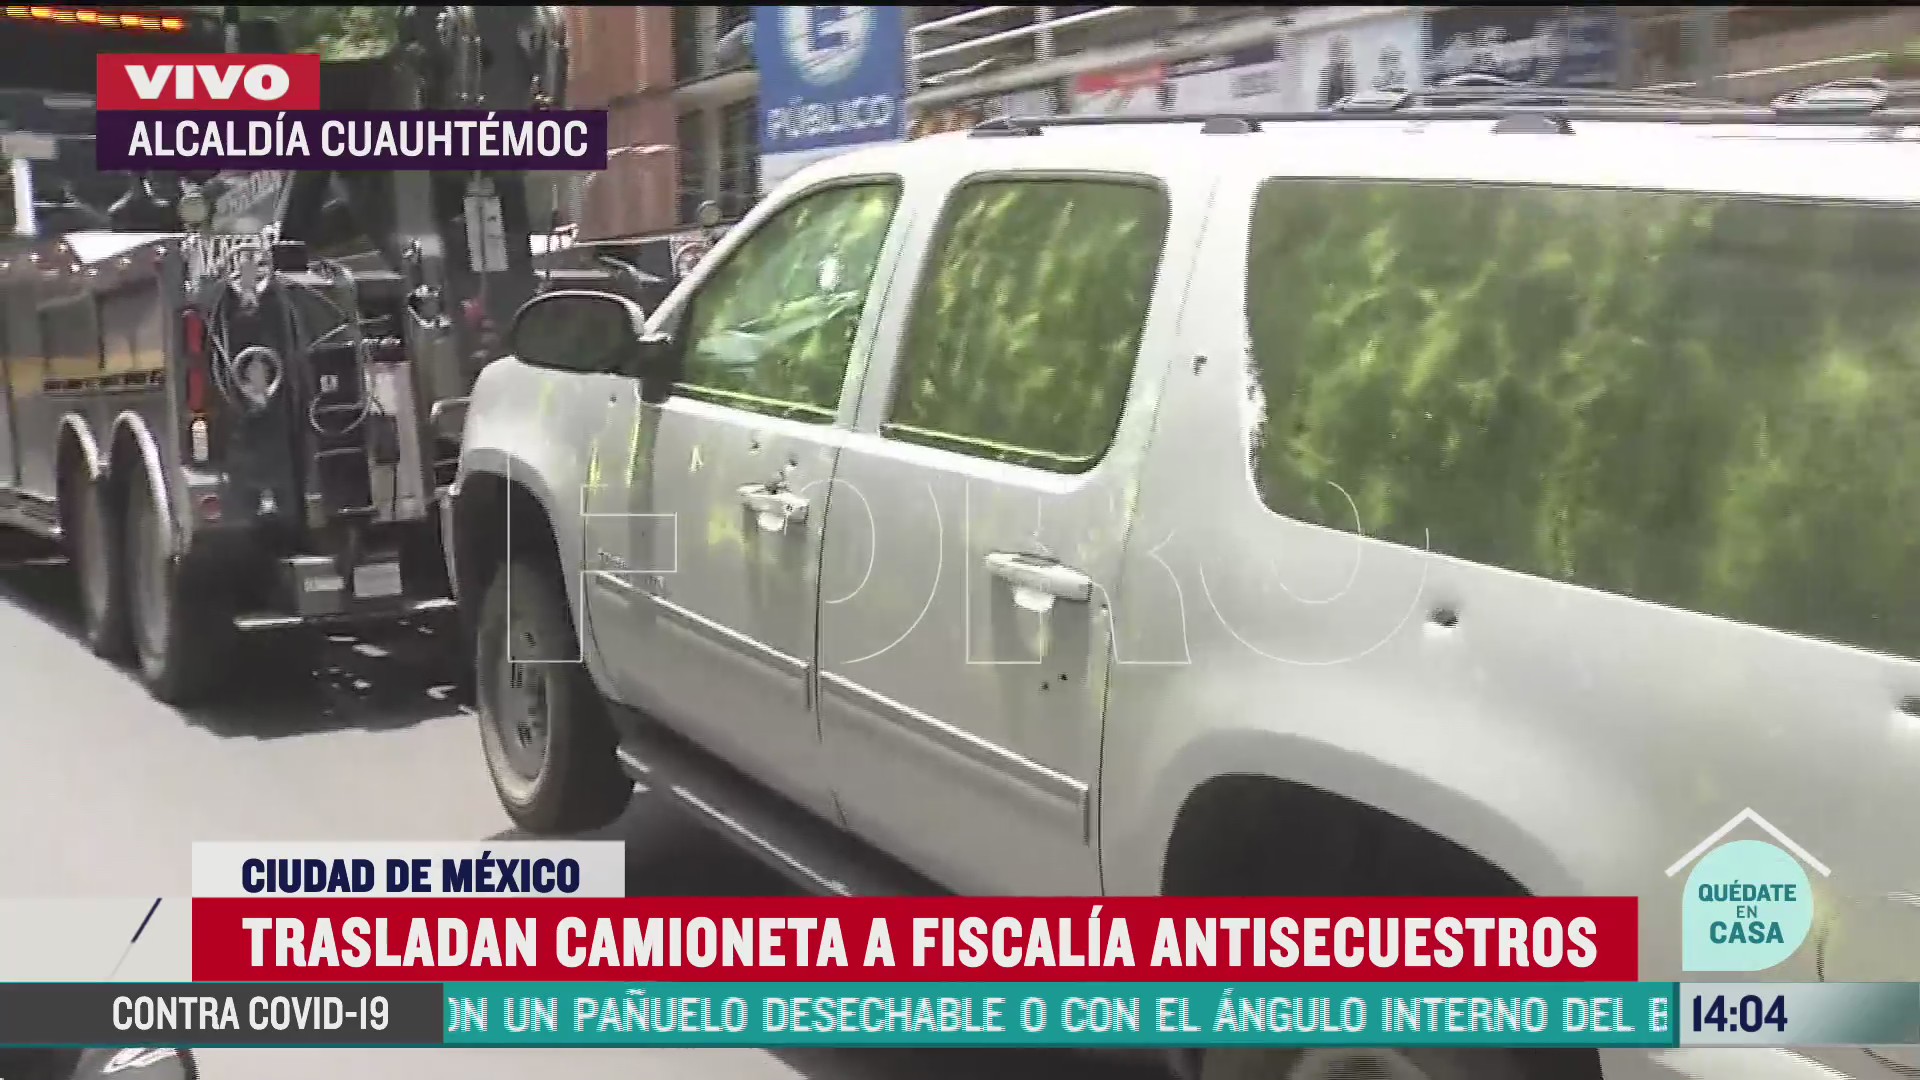 llega camioneta gris usada por delincuentes a fiscalia antisecuestros de cdmx